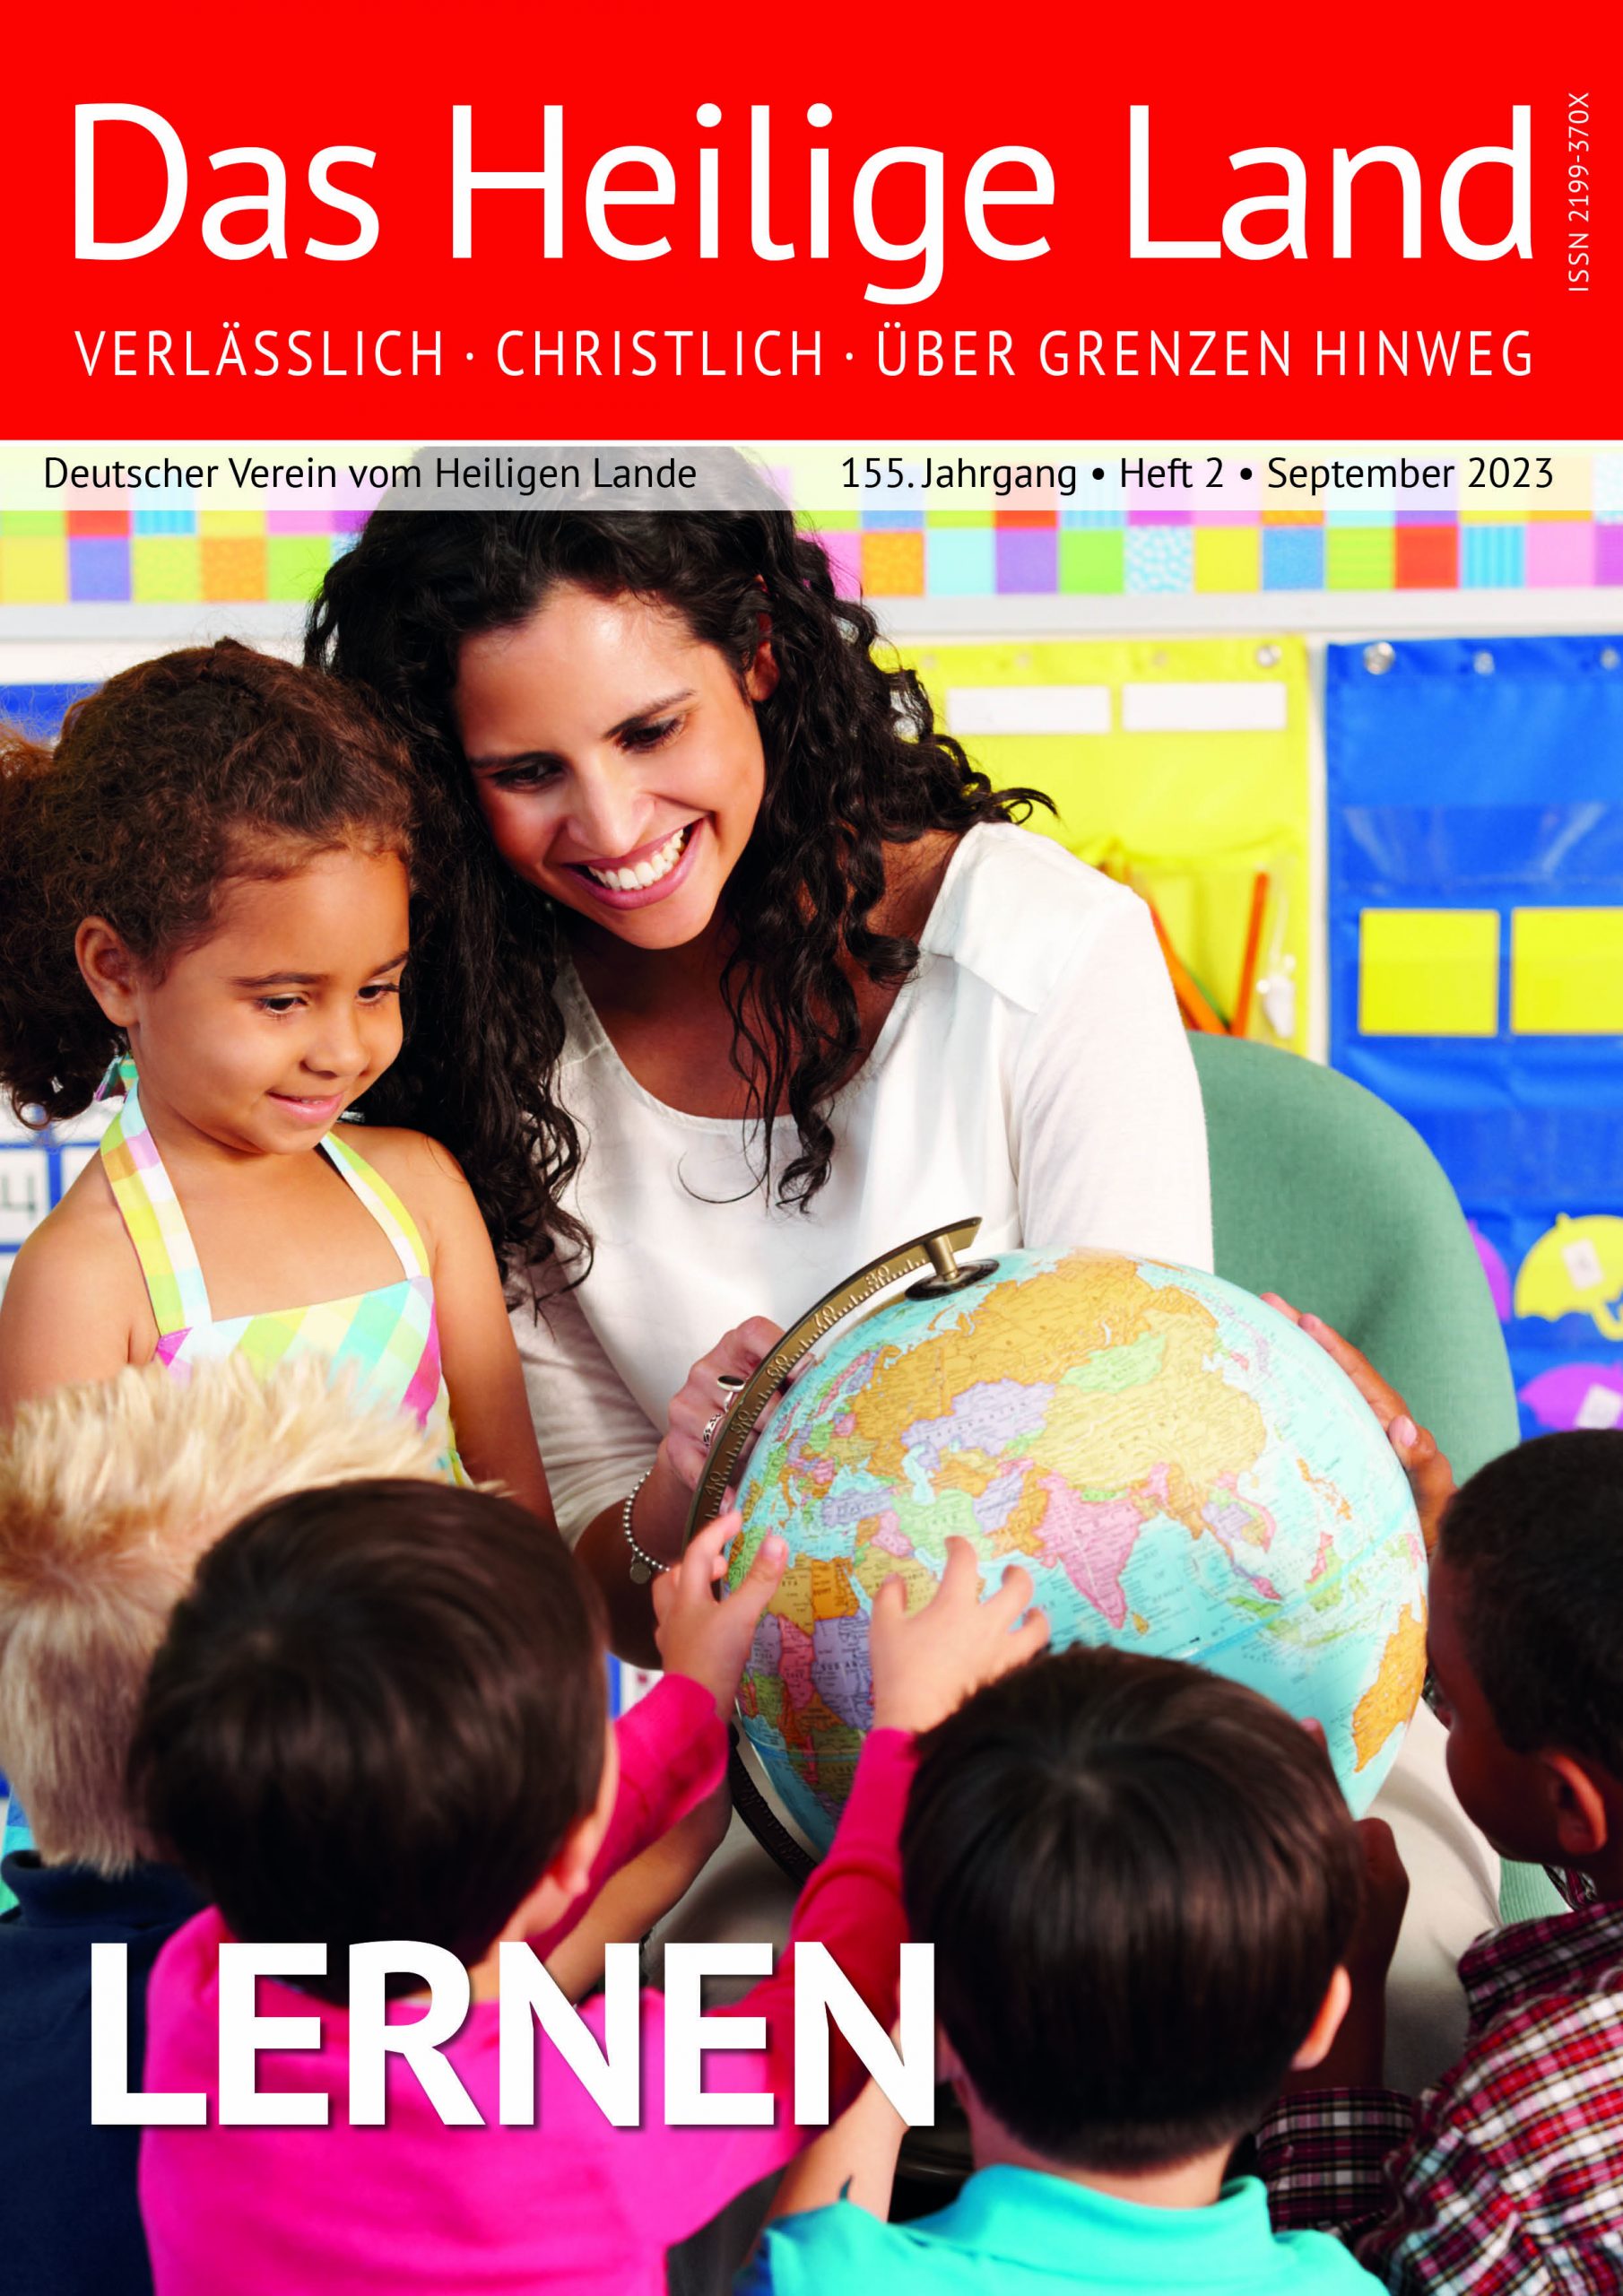 Zu sehen ist das Cover unserer Mitglieder-Magazin-Ausgabe 2-23. Darauf ist eine Frau zu sehen, die mehreren Kindern etwas auf einem Globus zeigt.